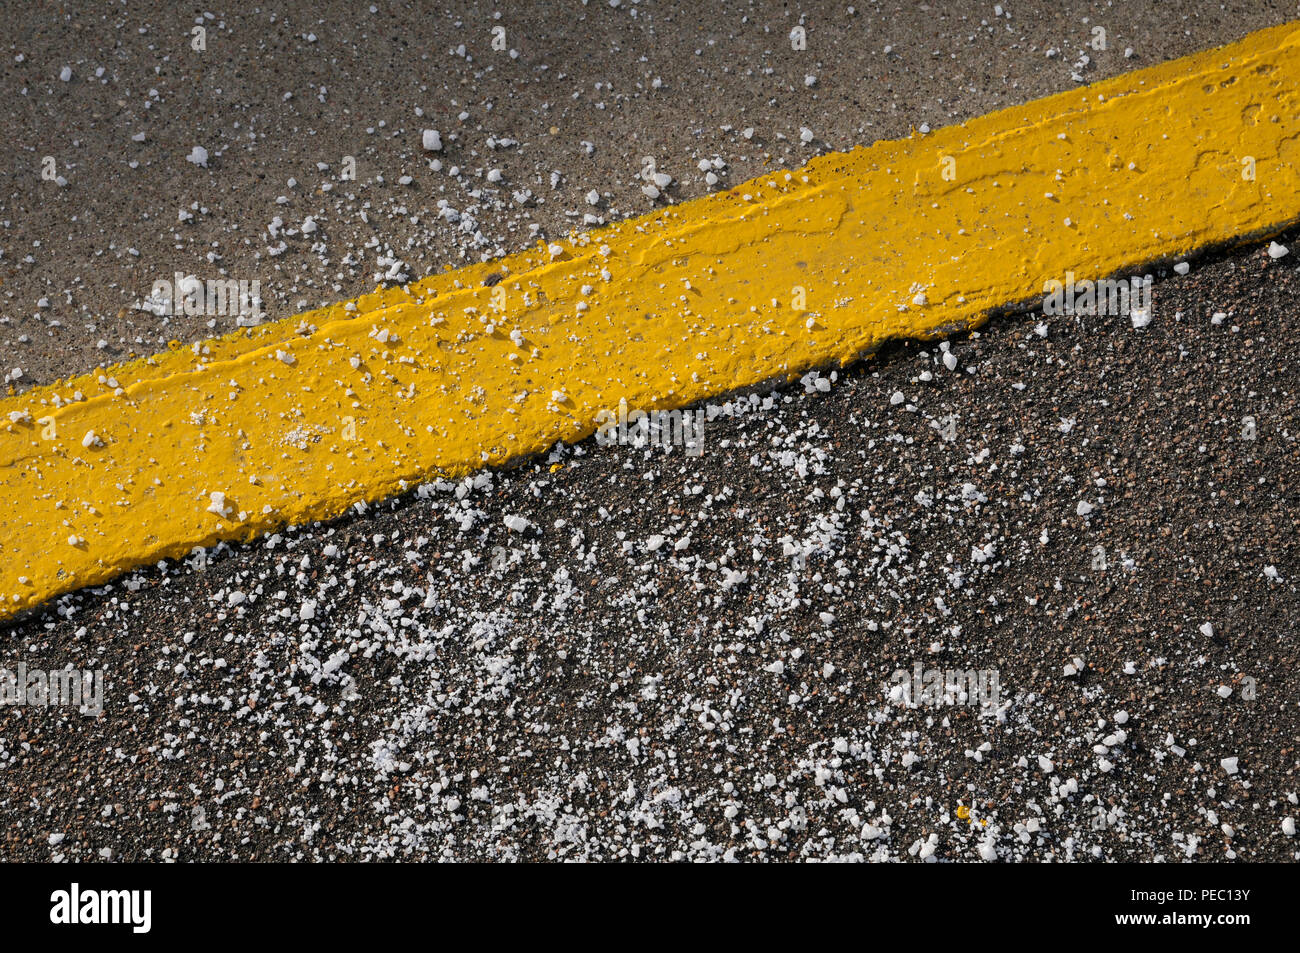 Grain de sel routier / rock / sel chlorure de sodium éparpillés autour d'une ligne jaune peinte Banque D'Images